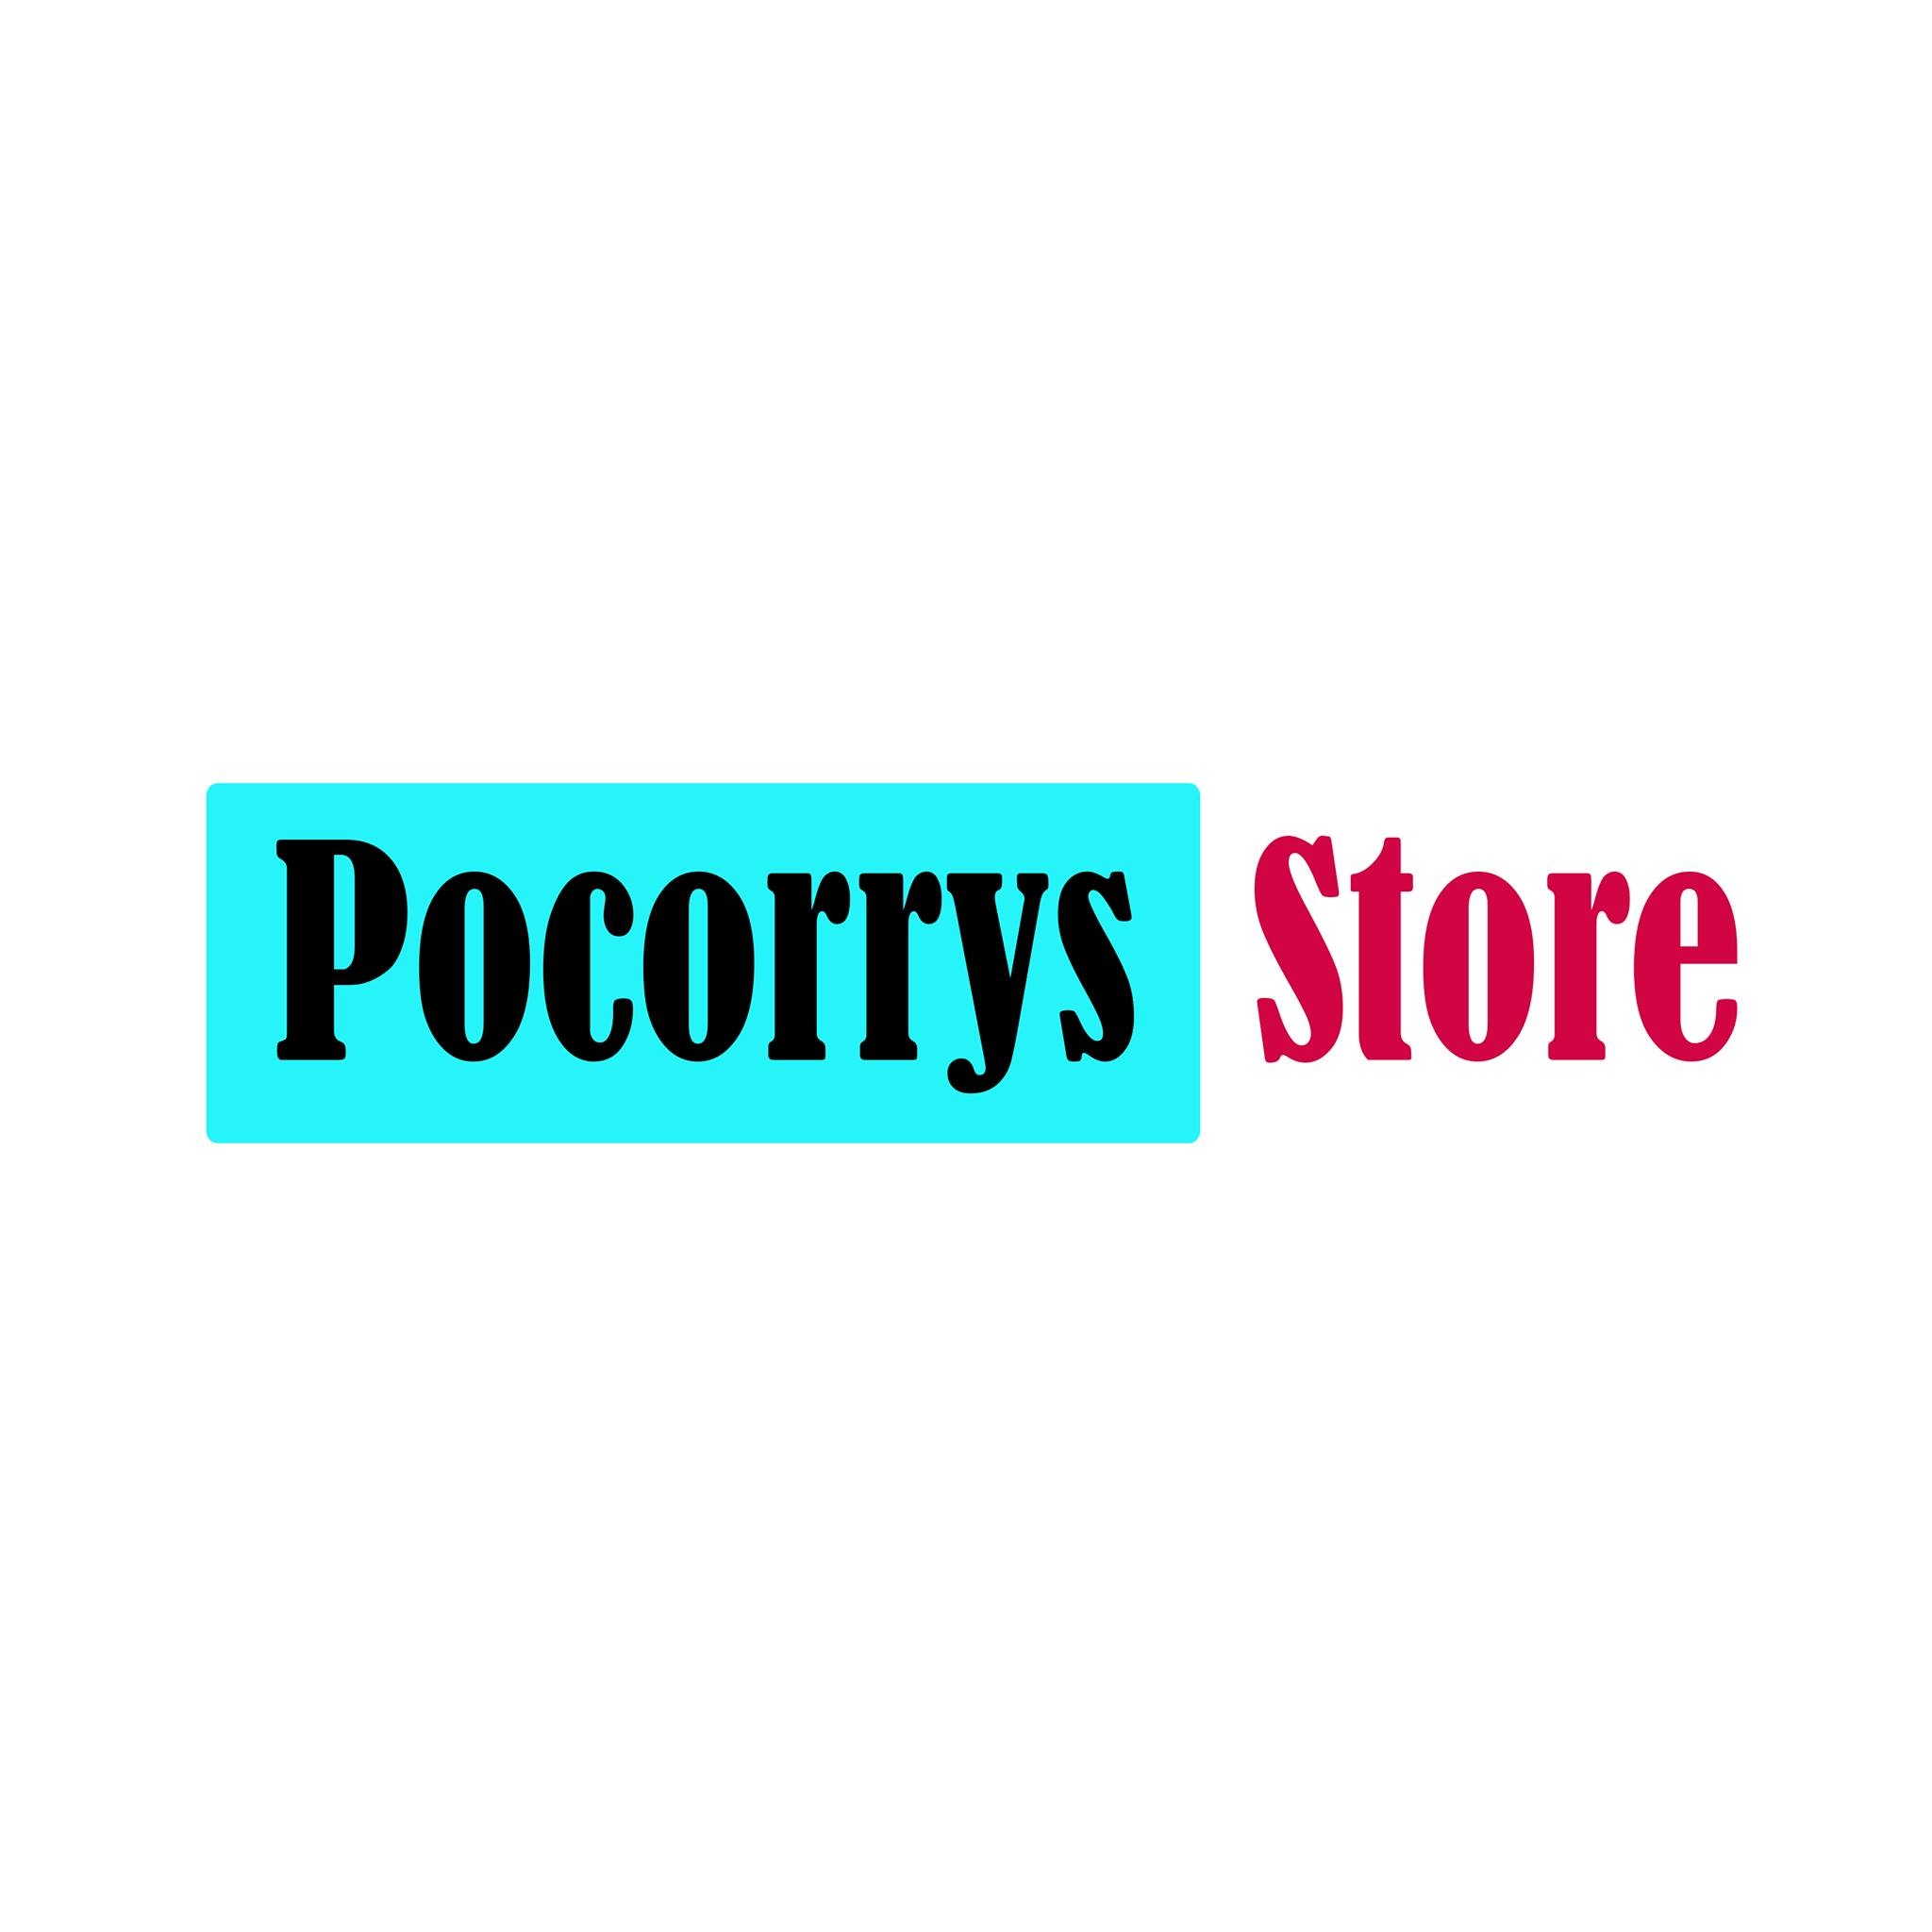 Pocorrys Store